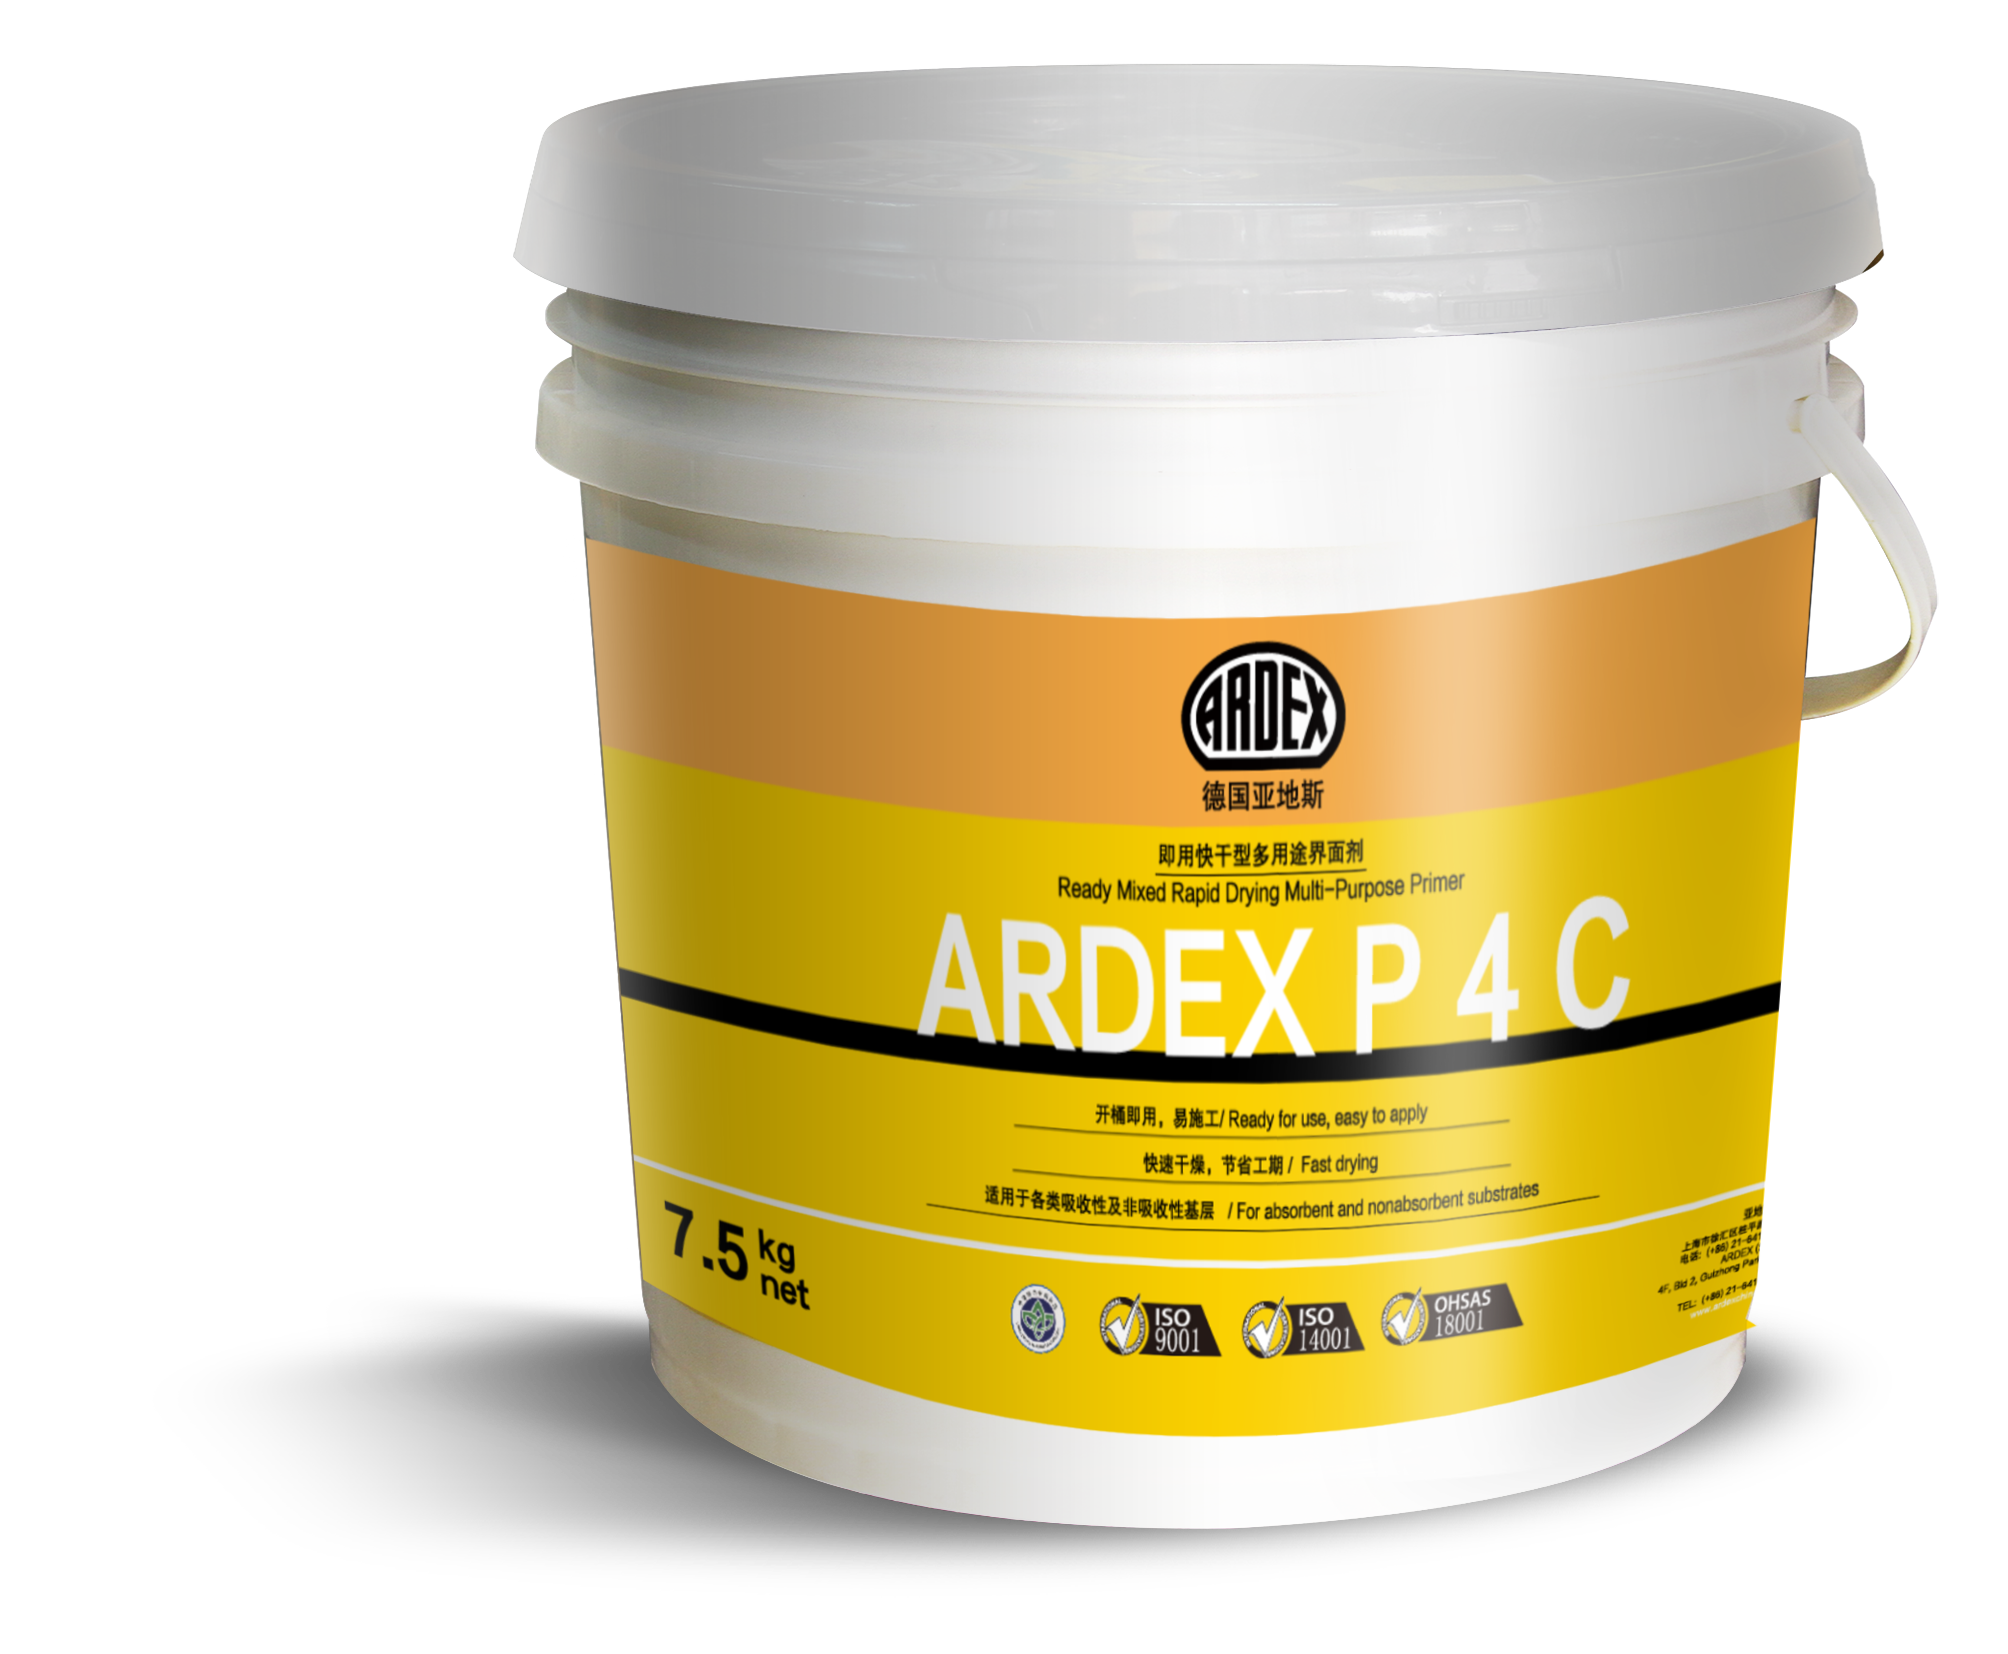 ARDEX P 4 C